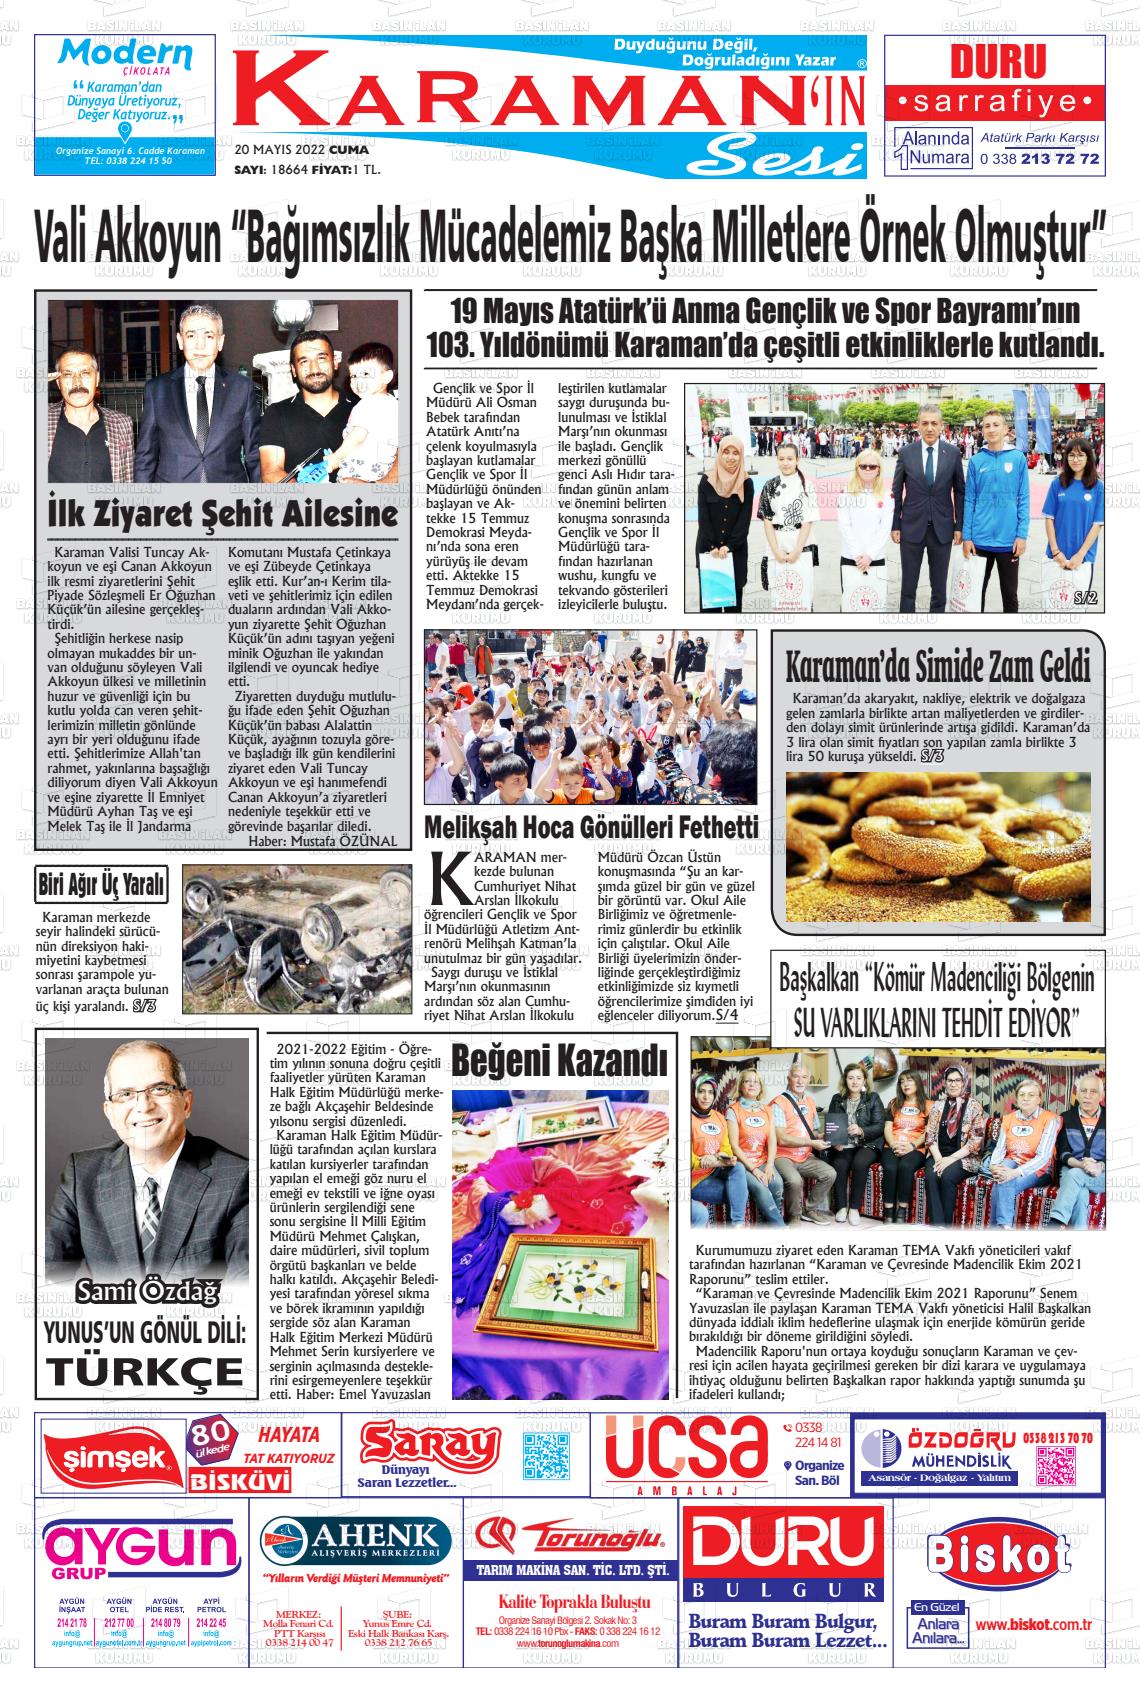 20 Mayıs 2022 Karaman'ın Sesi Gazete Manşeti